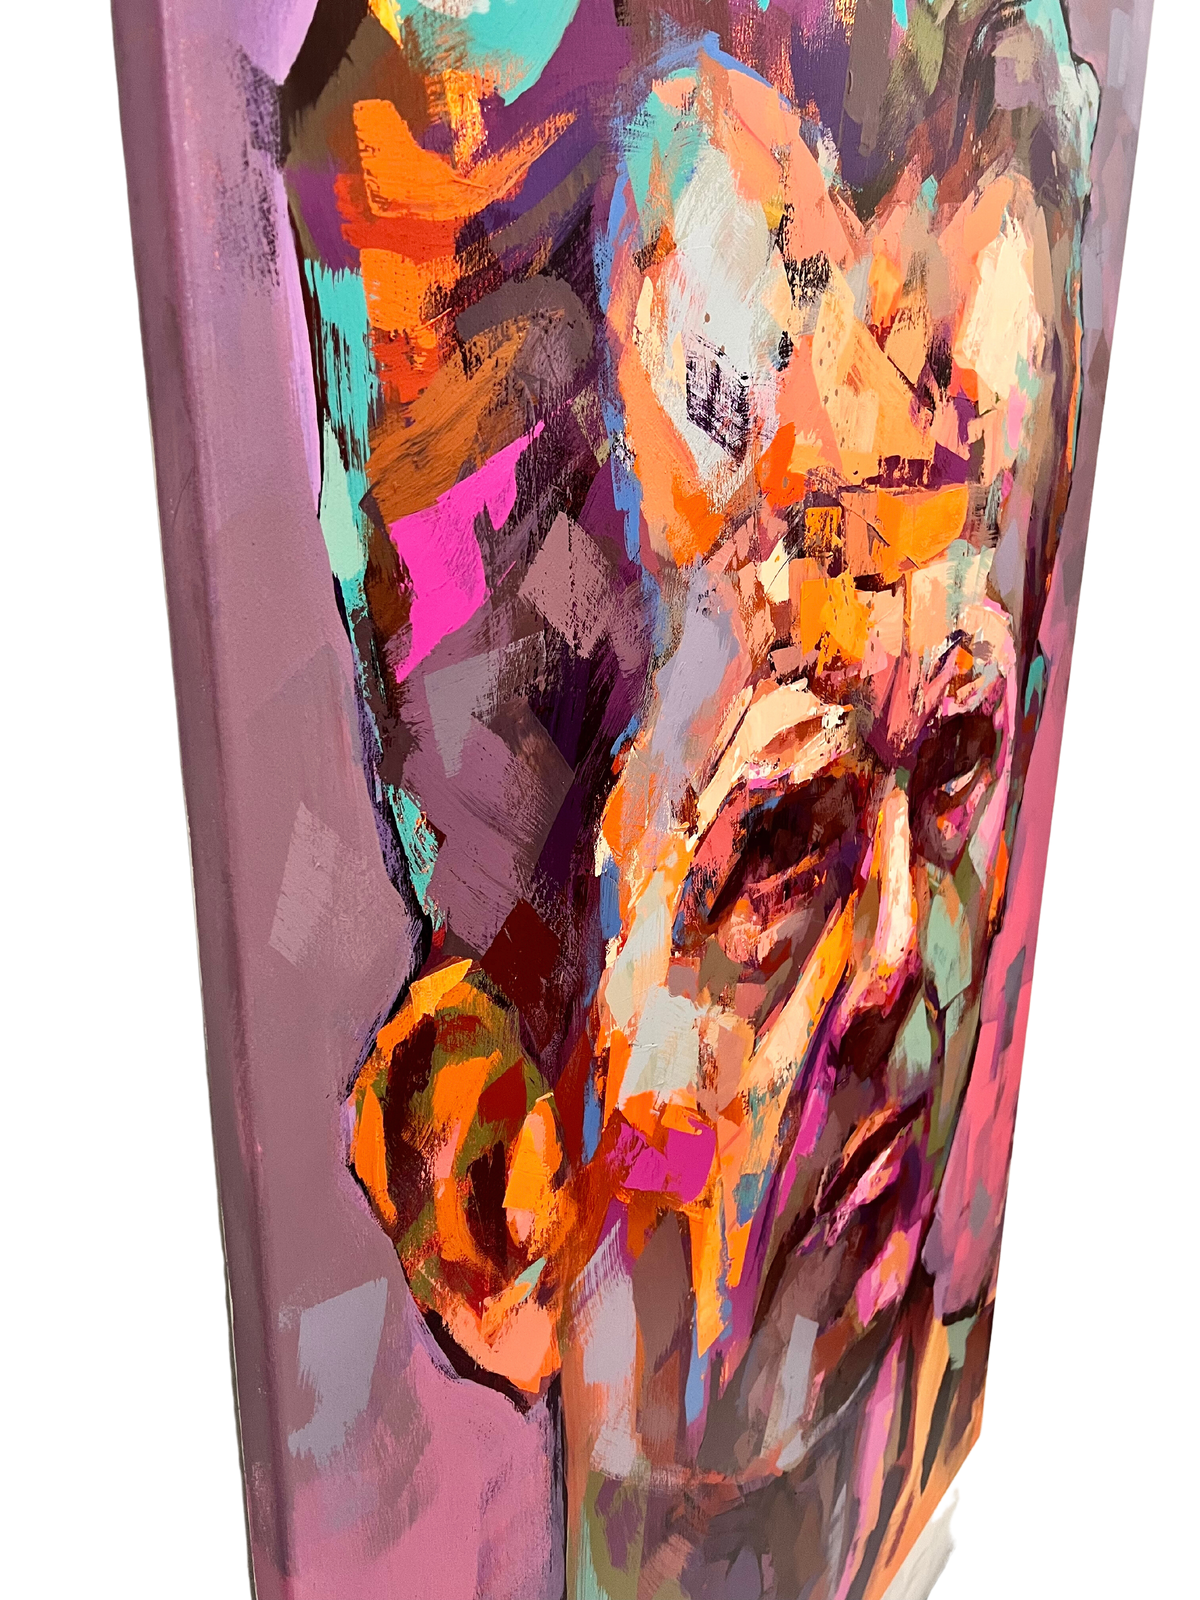 "Stefan Edberg" Akrylmålning på duk av Alberto Ramirez LEG, 160x100 cm